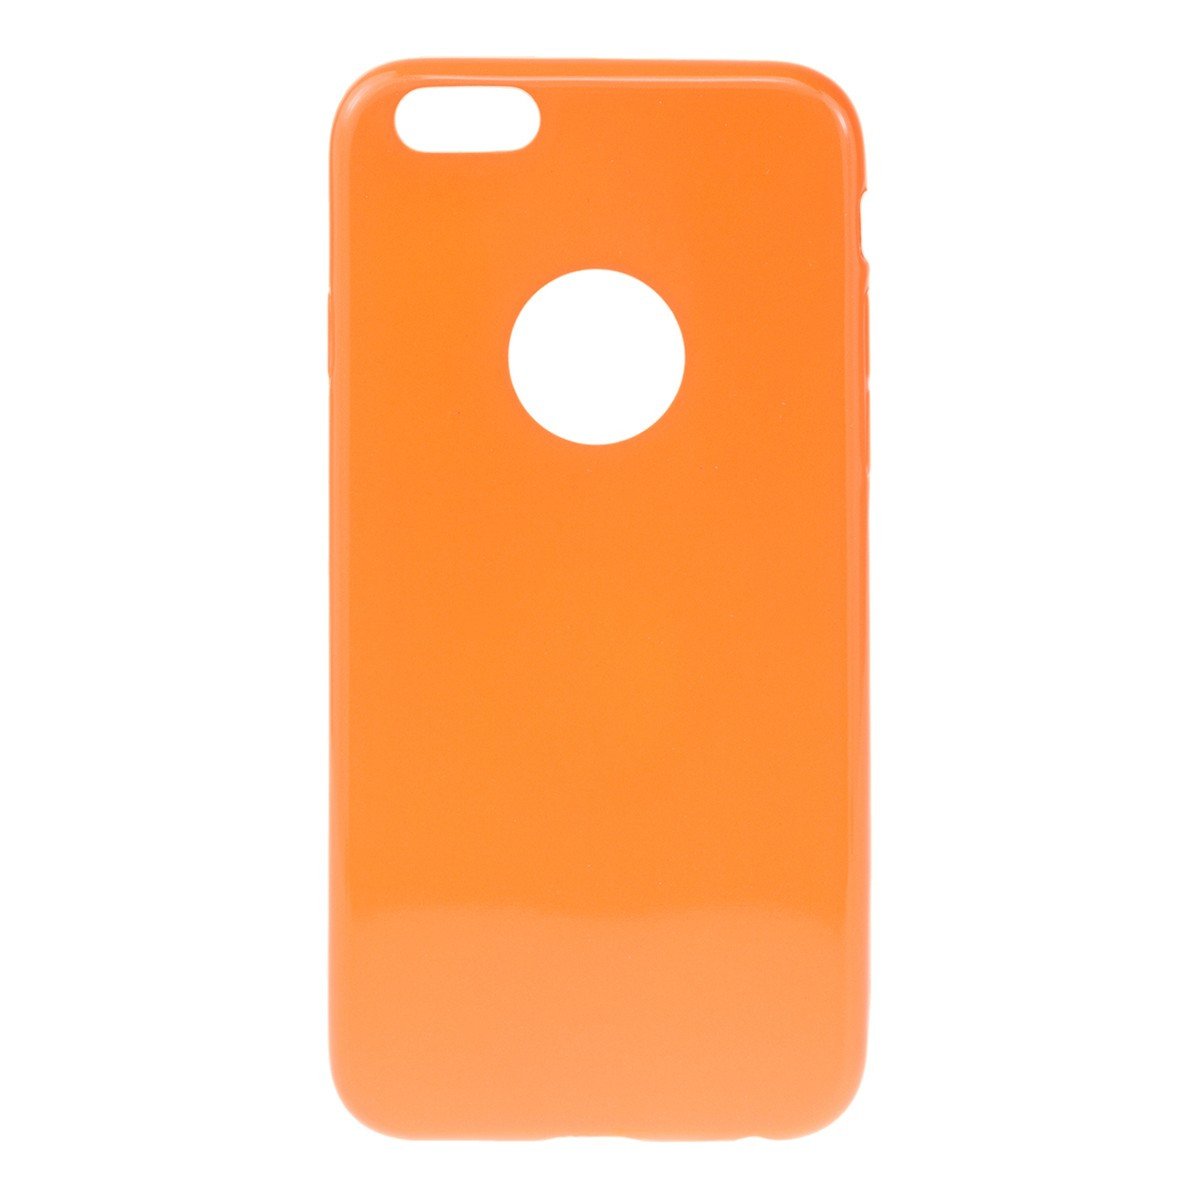 Θηκη TPU Jelly UV - iPhone 5/5s/SE - Πορτοκαλι - iThinksmart.gr